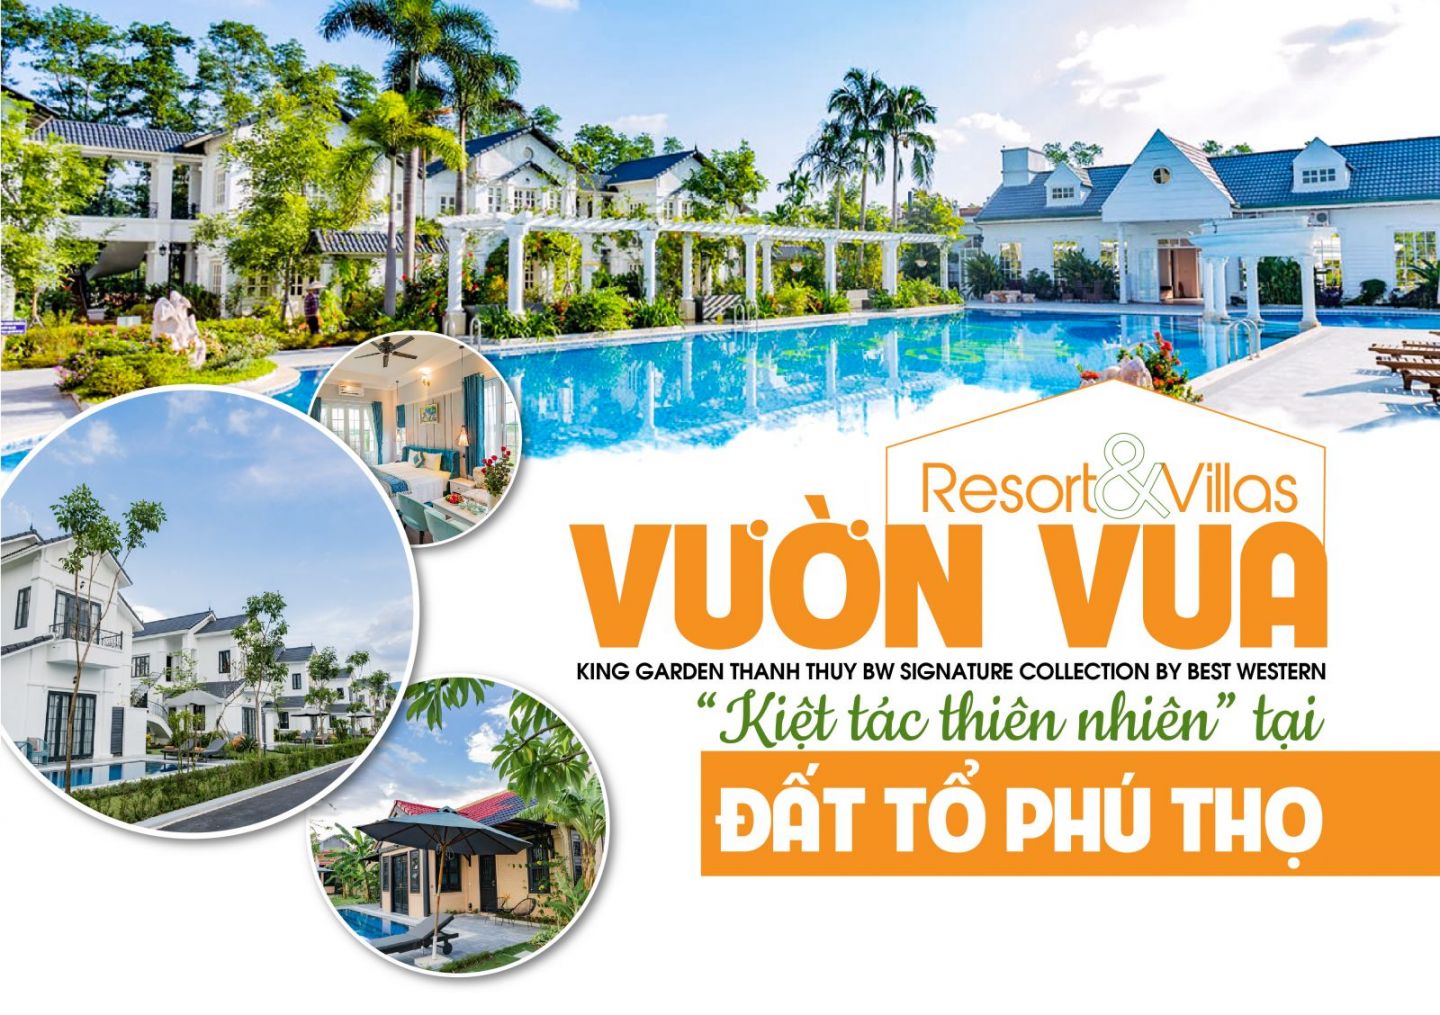 Vườn Vua Resort & Villas “kiệt tác thiên nhiên“ tại Đất tổ Phú Thọ